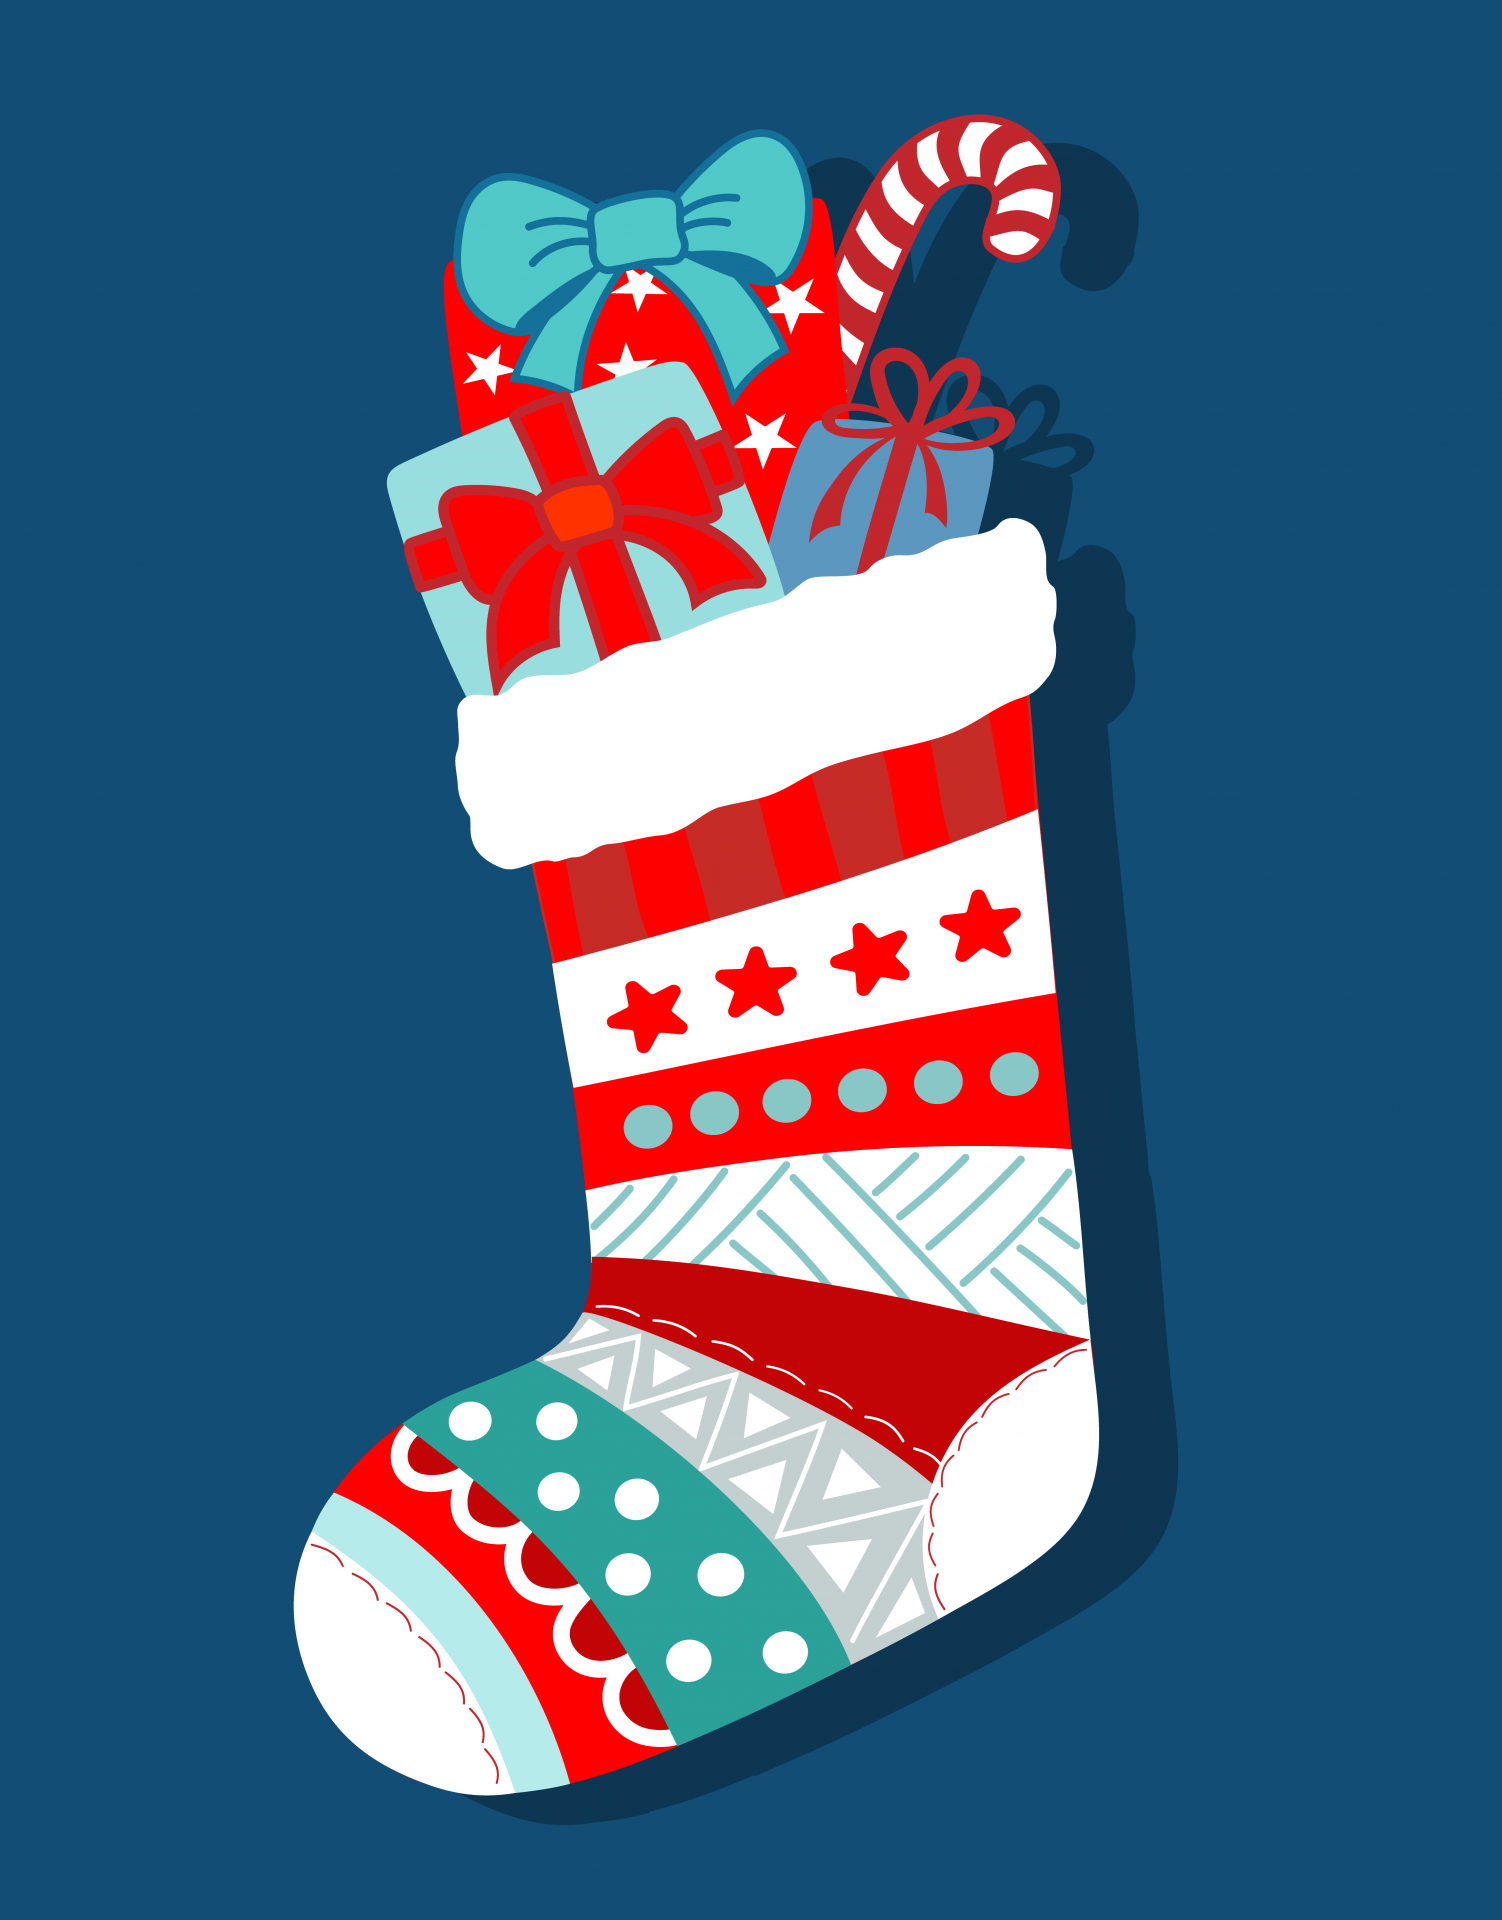 クリスマスの靴下イラスト 無料画像 Public Domain Pictures